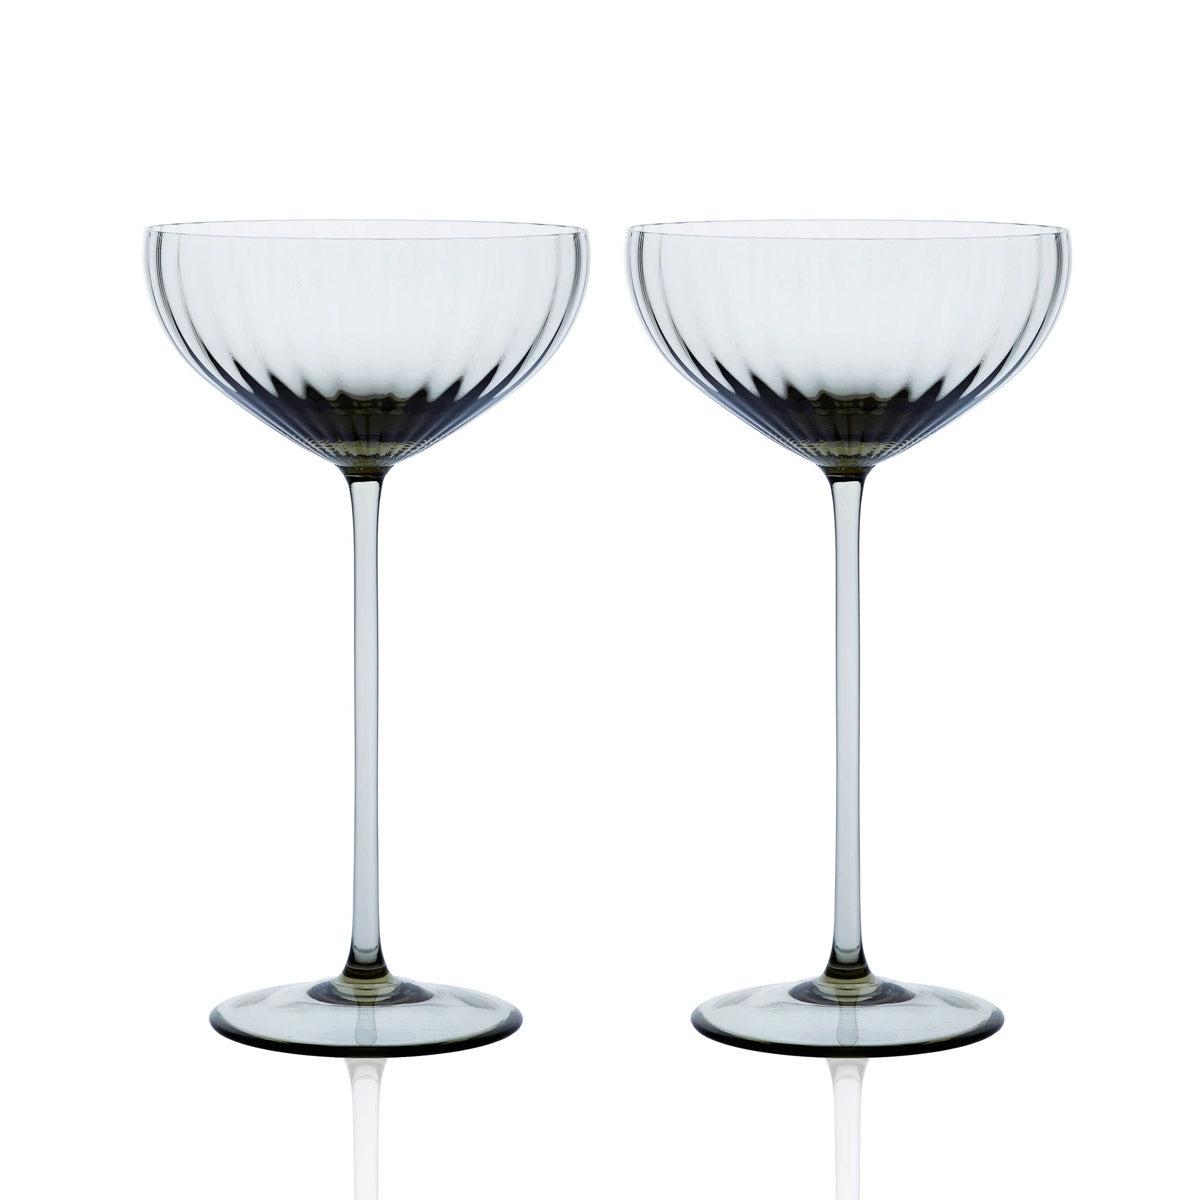 Quinn Ocean White Wine Glasses